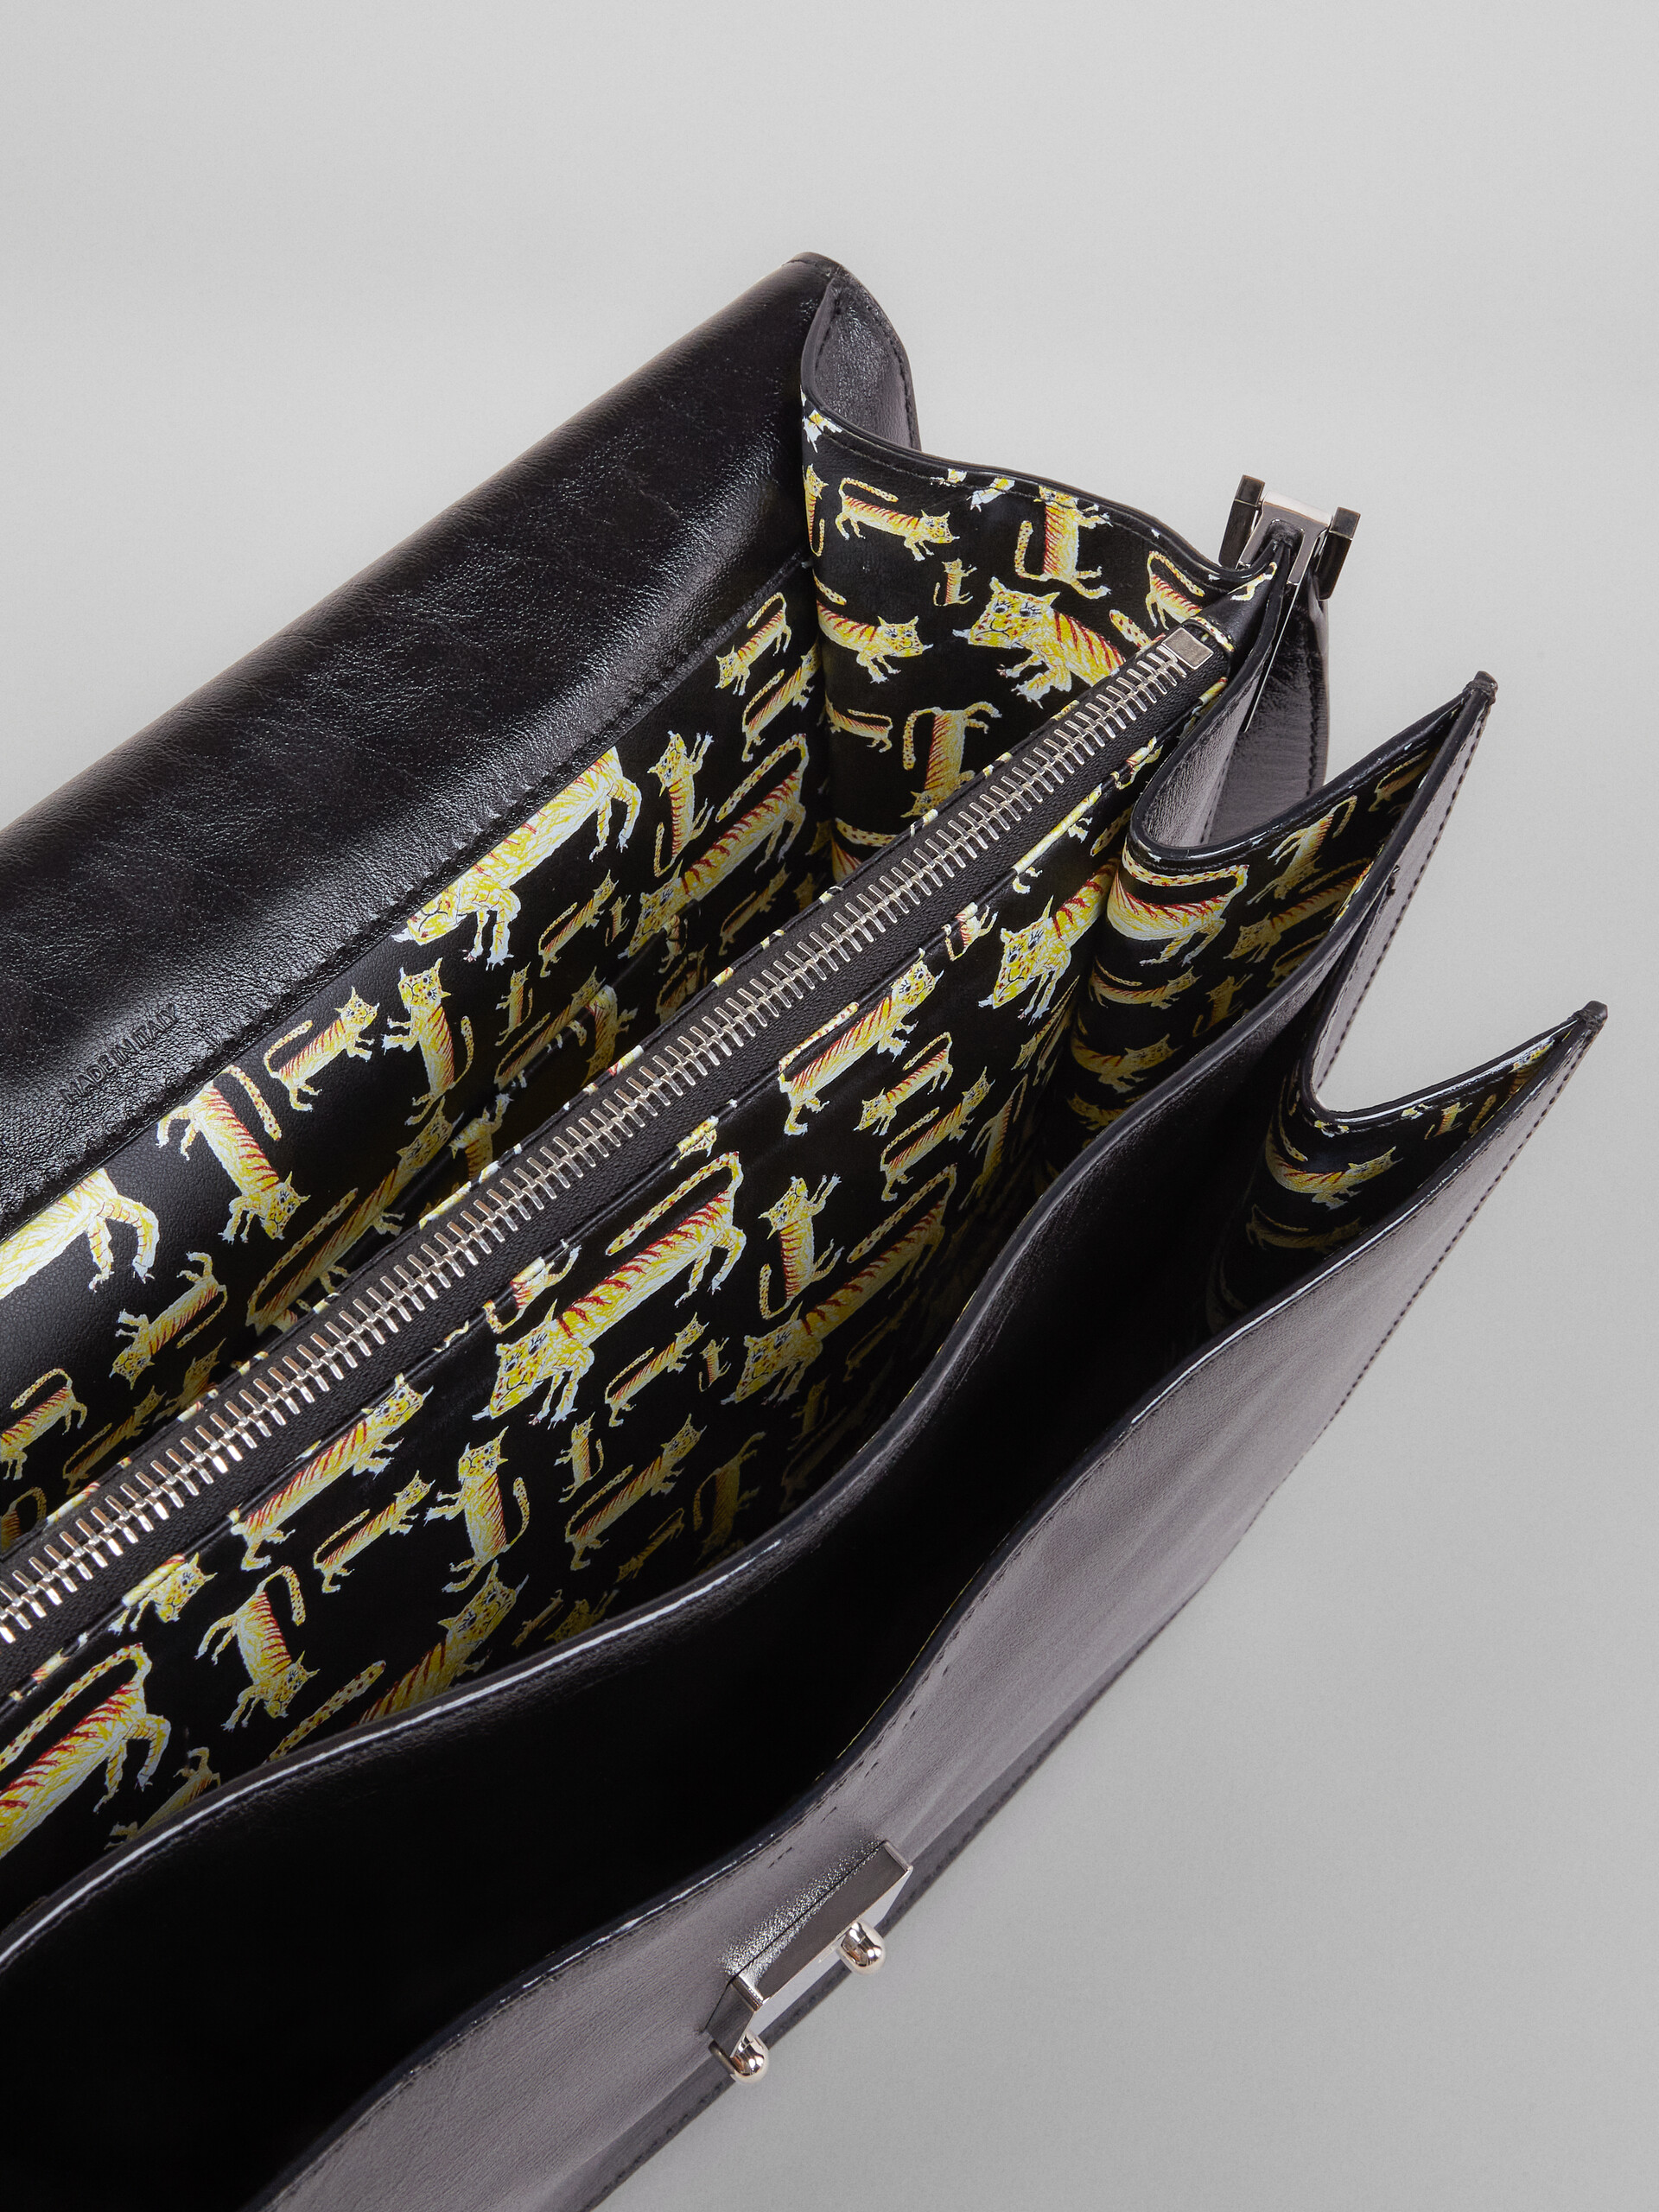 TRUNK SOFT bag in black leather and naif tiger print - Shoulder Bag - Image 5